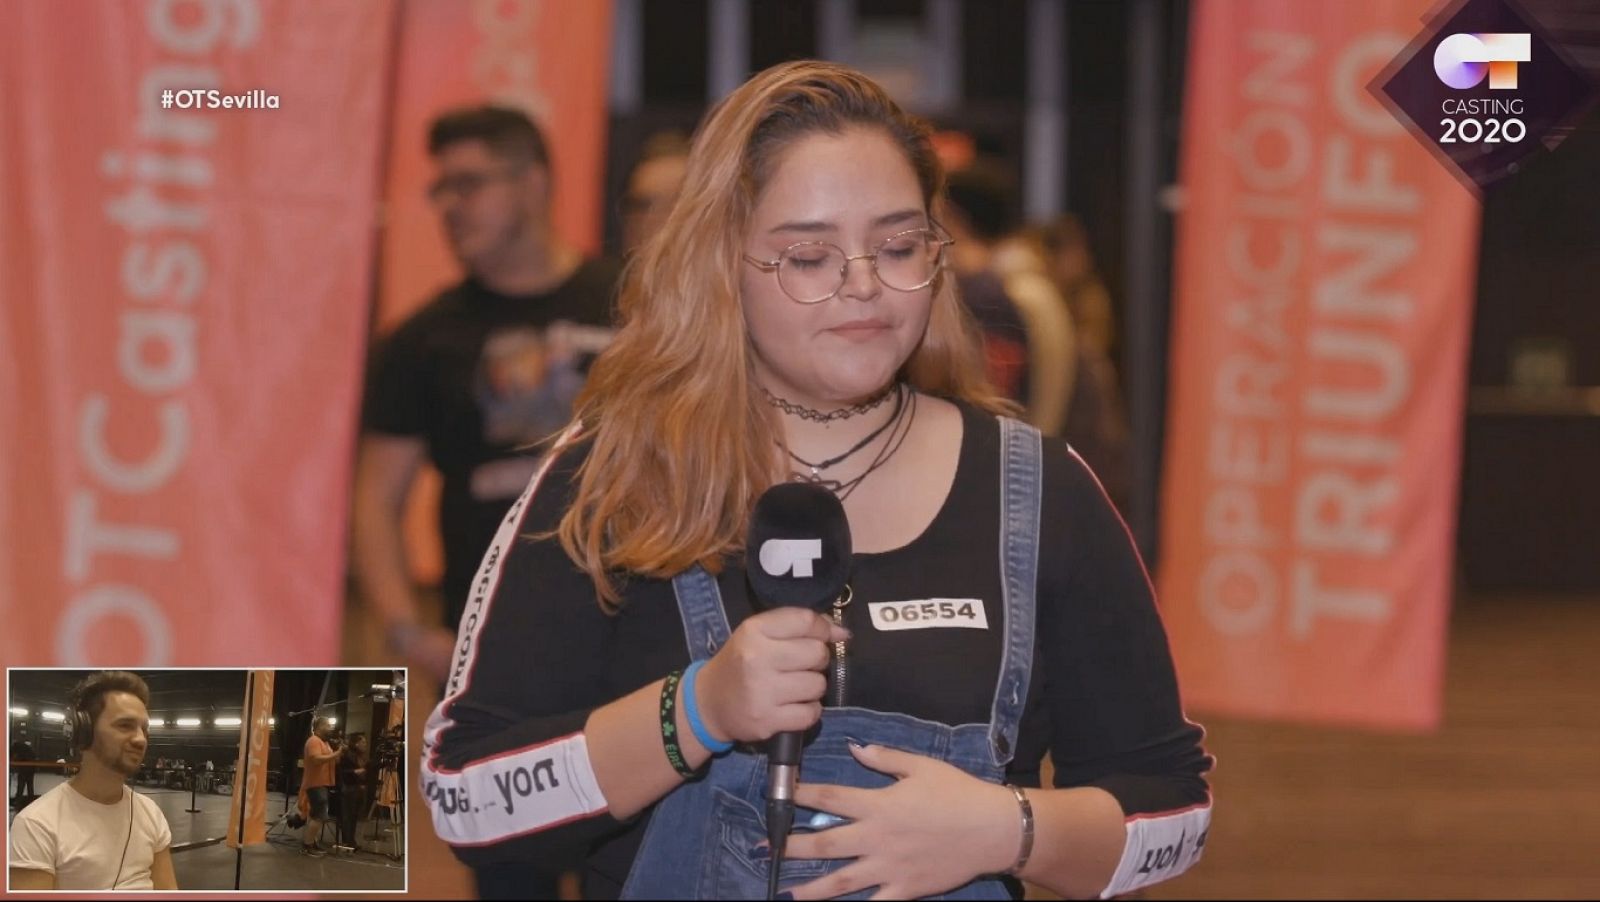 Esta chica canta "La Flaca" desgarradamente en la fase 1 del Casting de Operación Triunfo 2020 en Sevilla